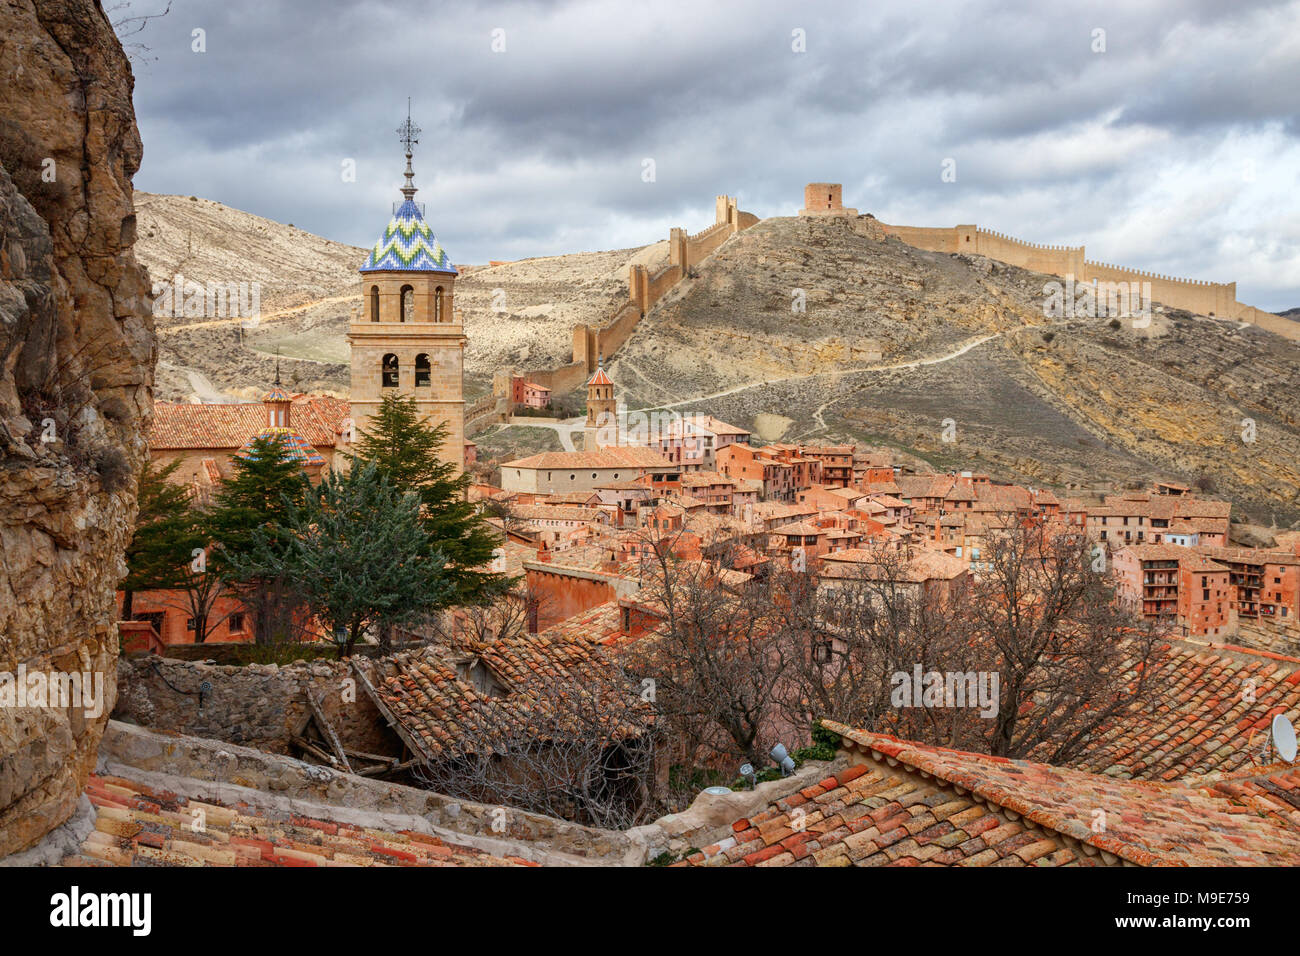 Bellissima vista della città medievale Albarracin con le colline e le mura della città sullo sfondo sotto un cielo nuvoloso. Teruel, Spagna. Foto Stock